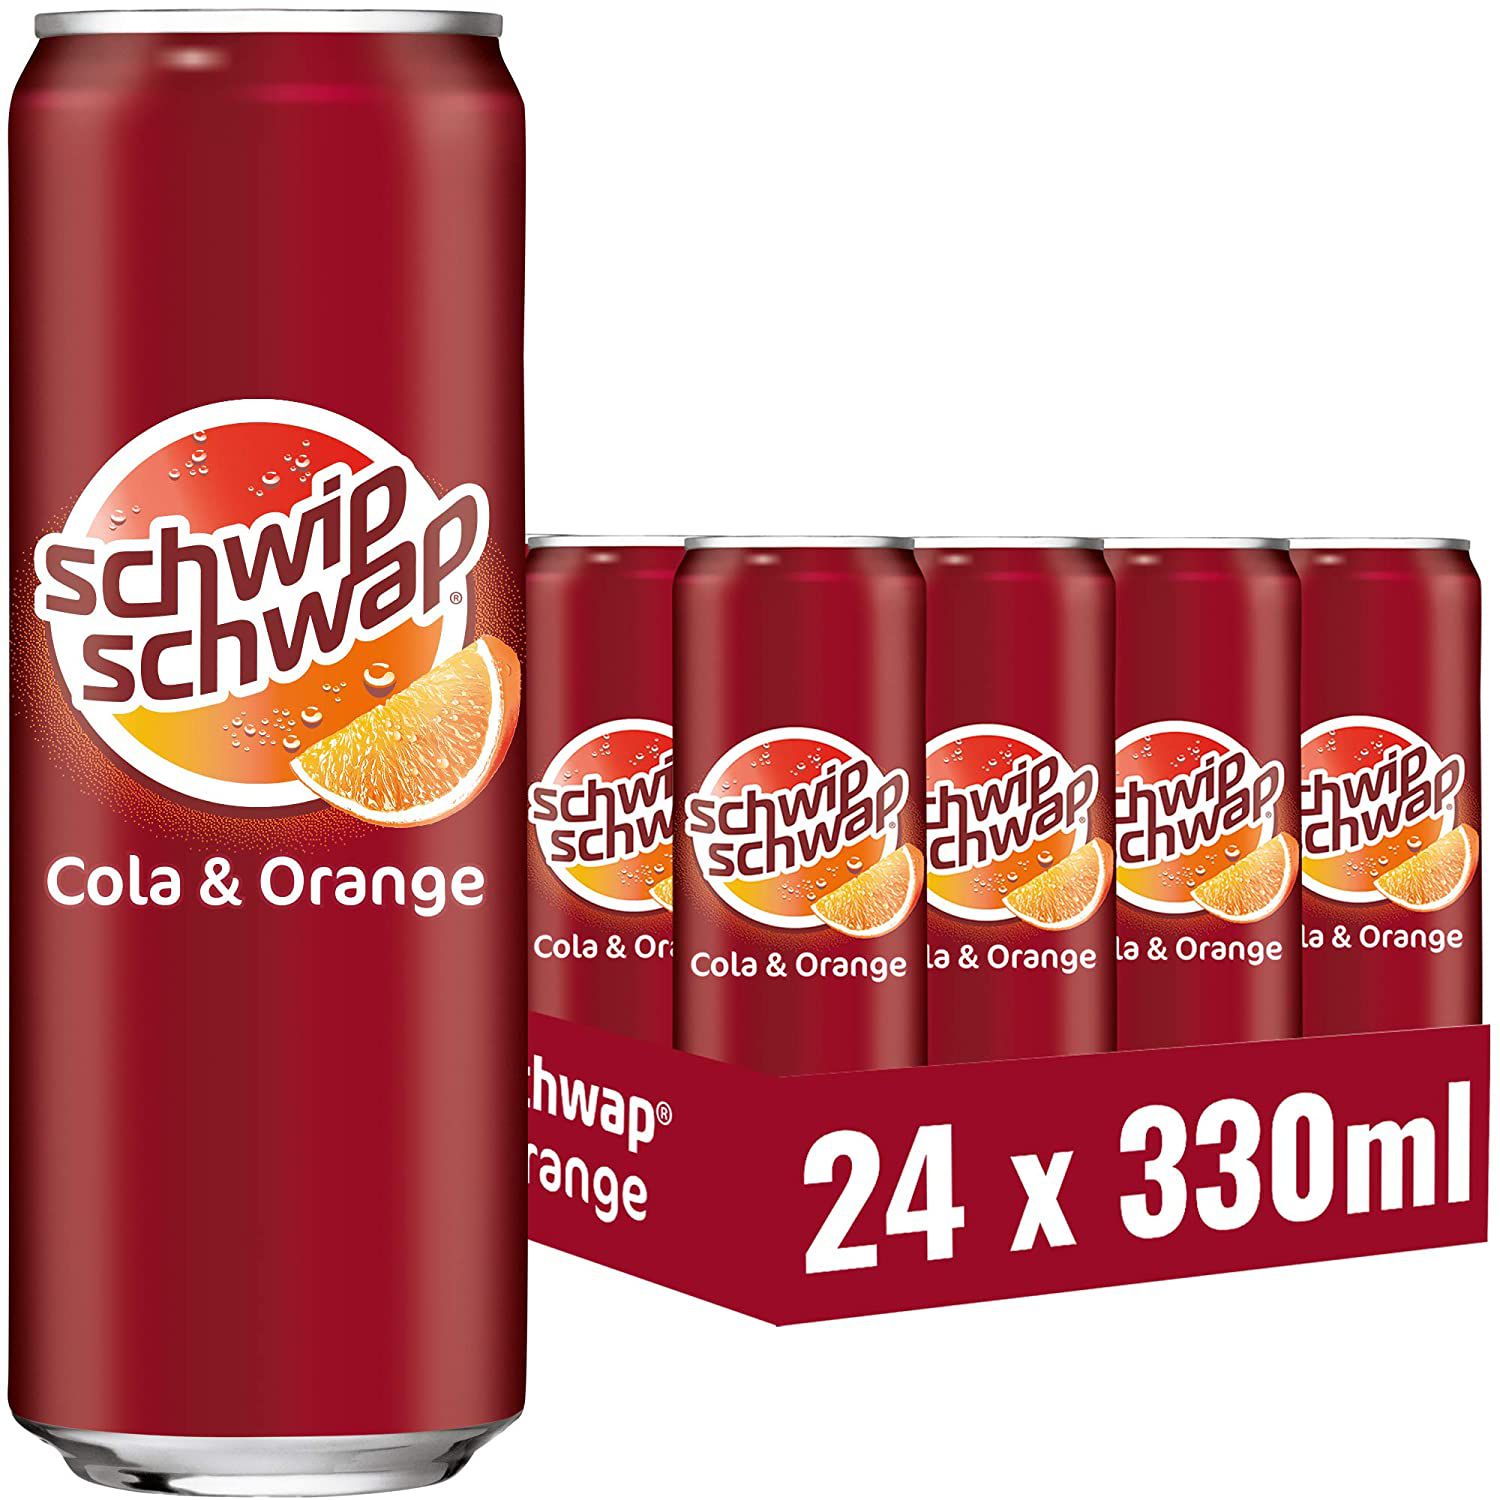 24x Schwip Schwap koffeinhaltiges Cola Erfrischungsgetränk mit Orange für 10,99€ + 6€ Pfand